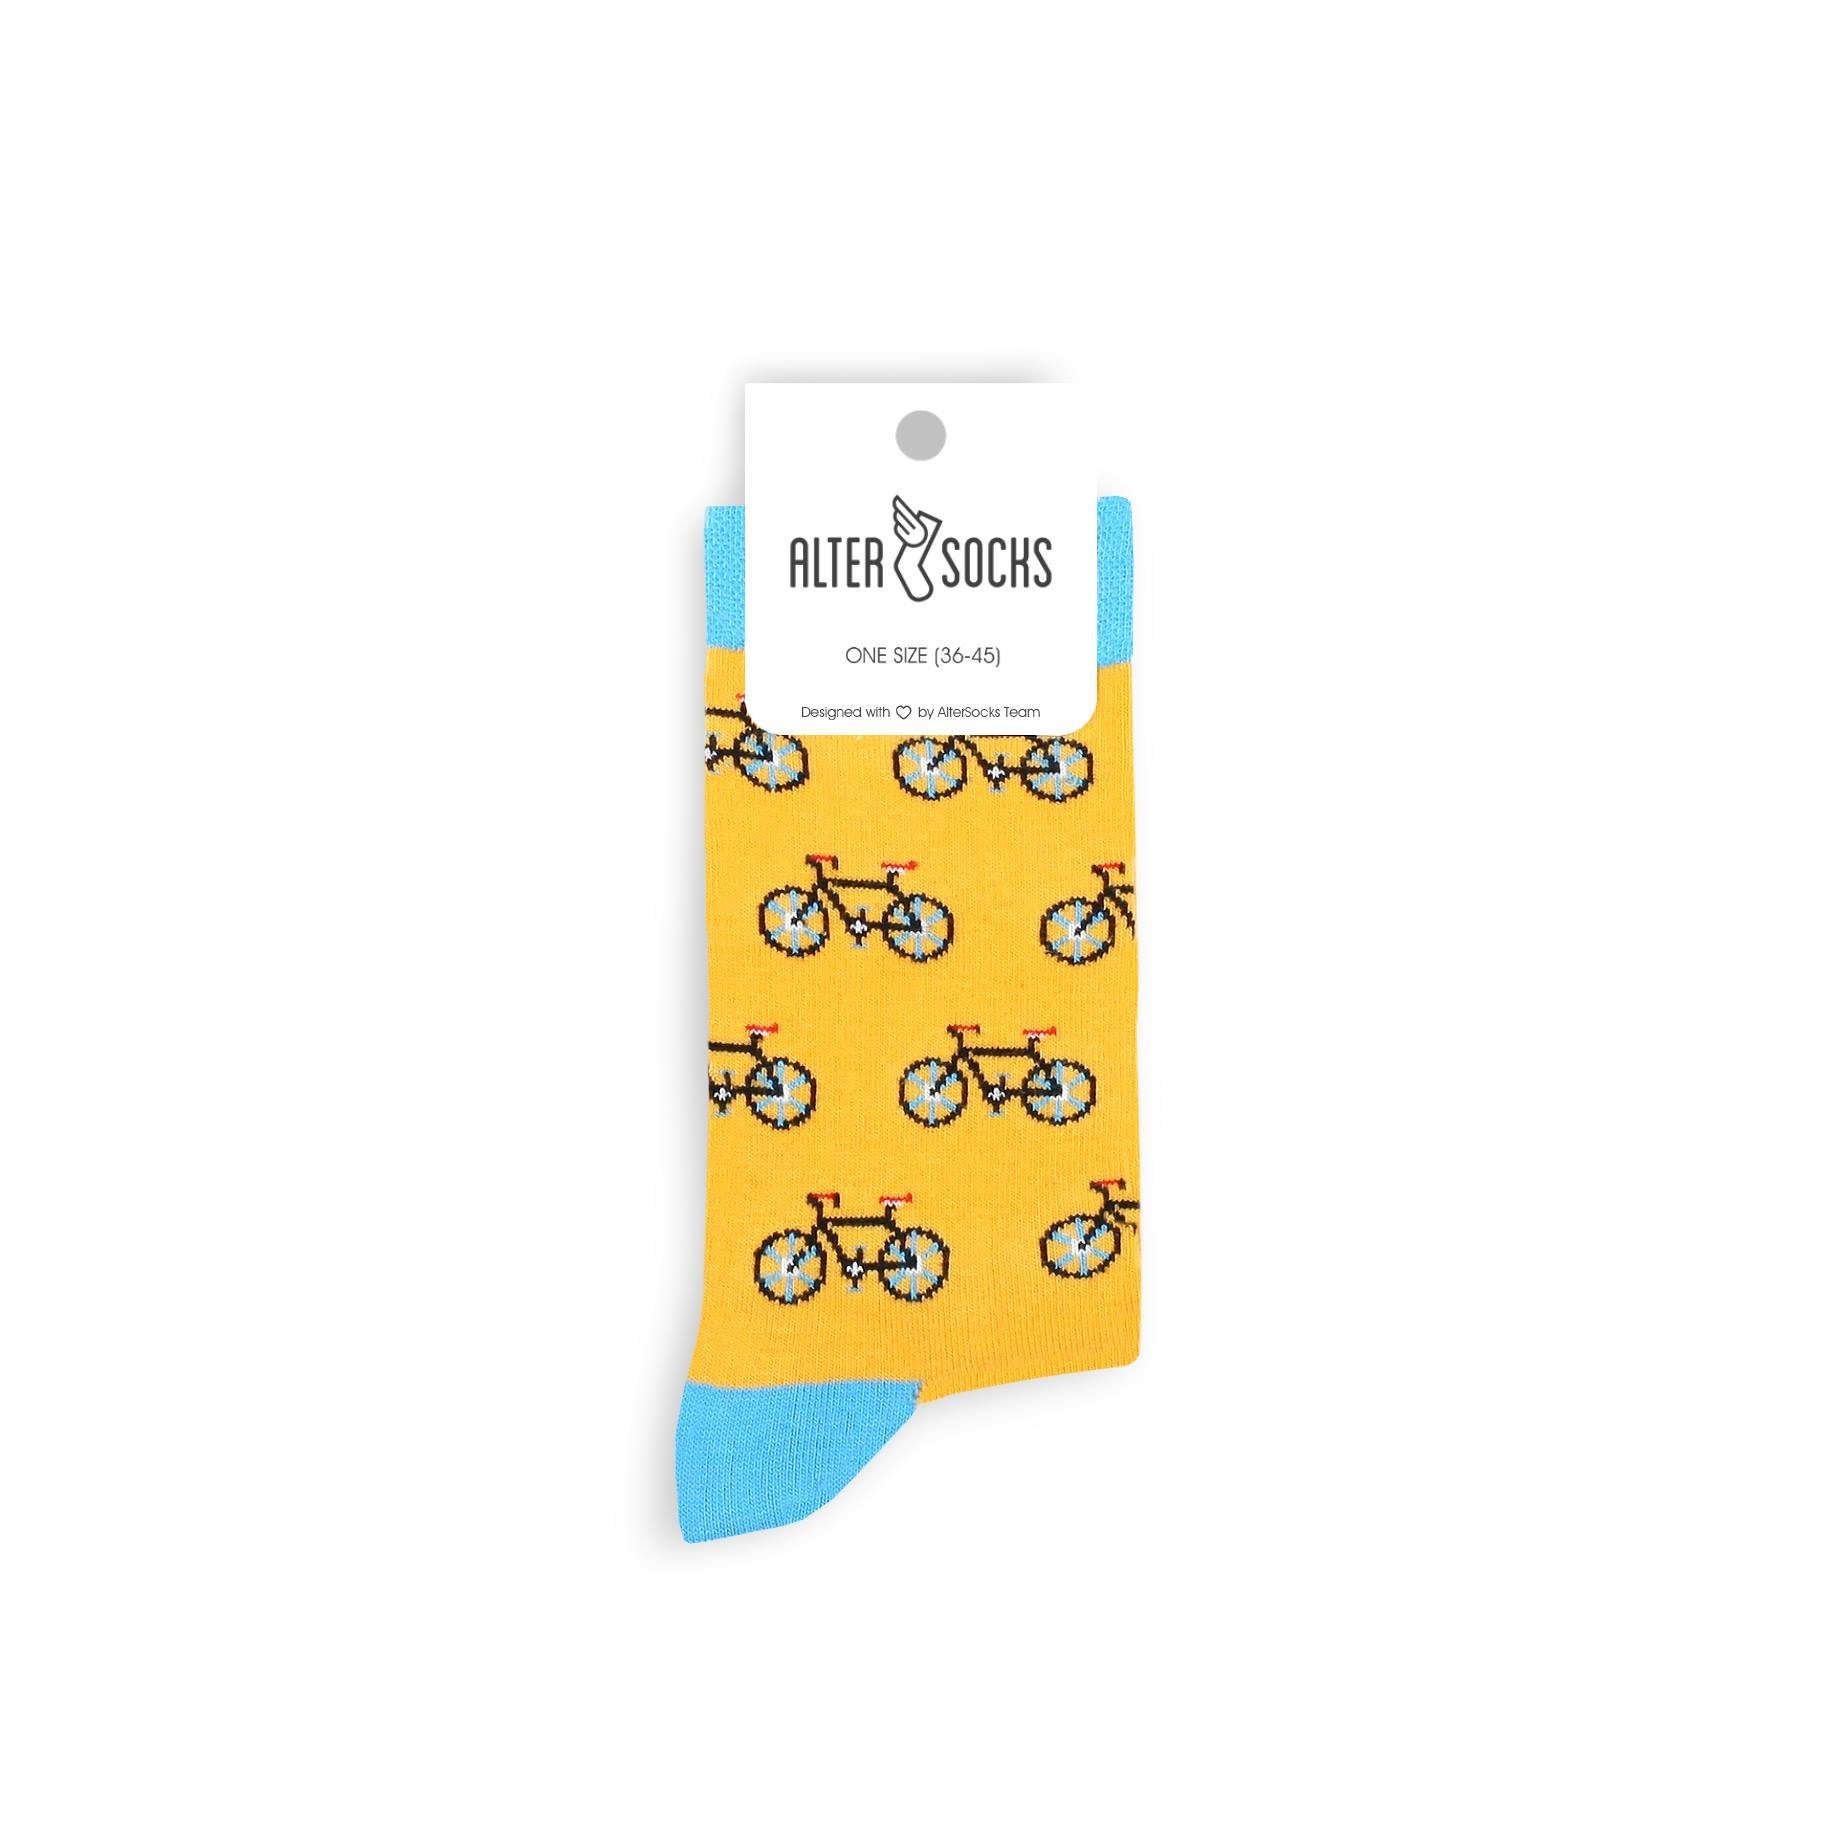 Socken, Paar) lustige Socken Fahrrad TwoSocks & Baumwolle, Freizeitsocken Einheitsgröße (2 Herren Damen